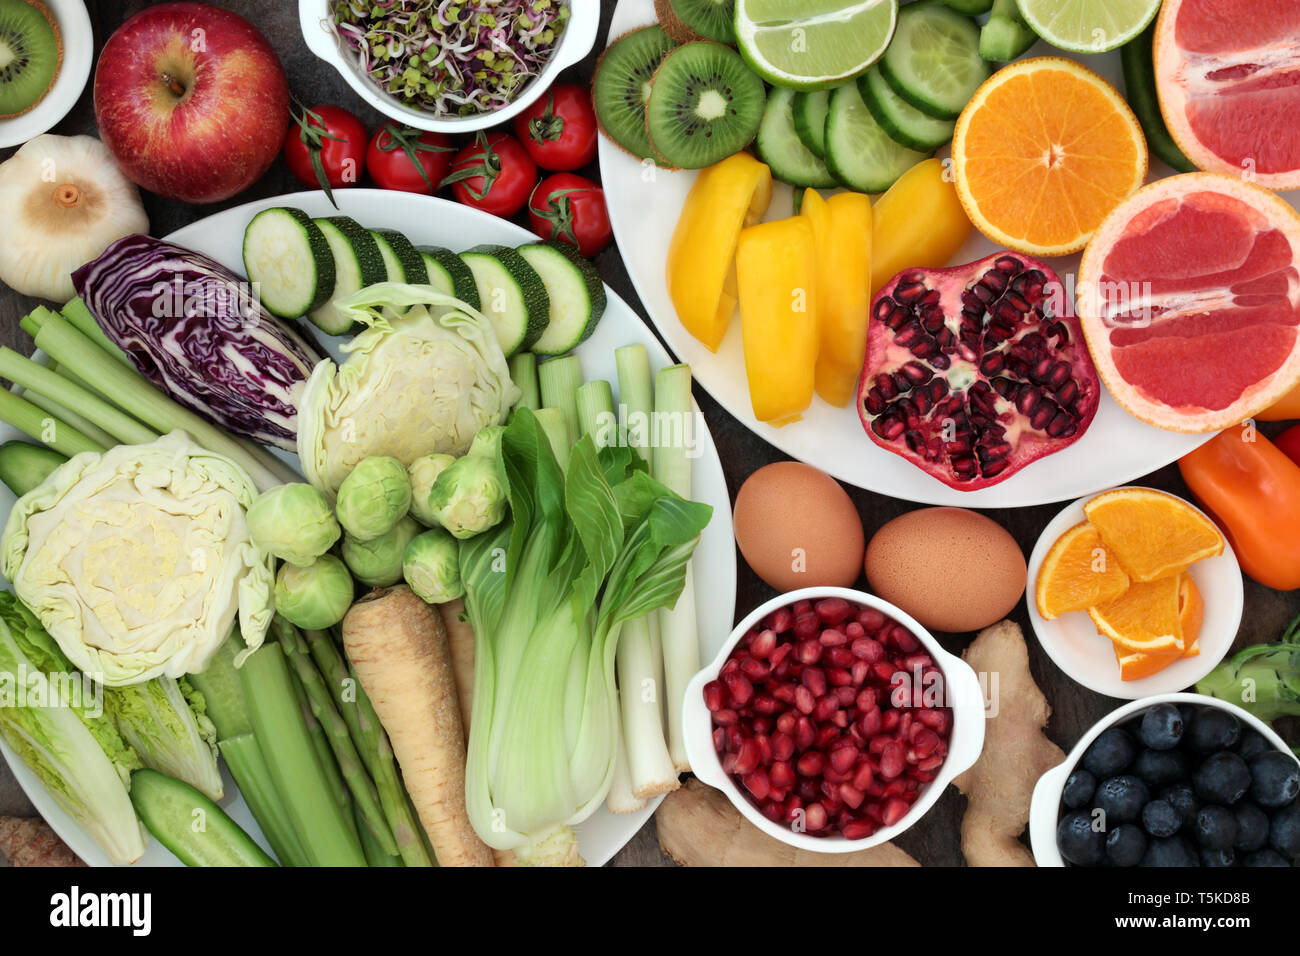 Gesundheit Nahrung für sauber essen Konzept mit frischem Obst, Gemüse, Milchprodukte, Kräutern und Gewürzen. Hoch in den Antioxydantien, Eiweiß, Vitamine und Ballaststoffe. Stockfoto